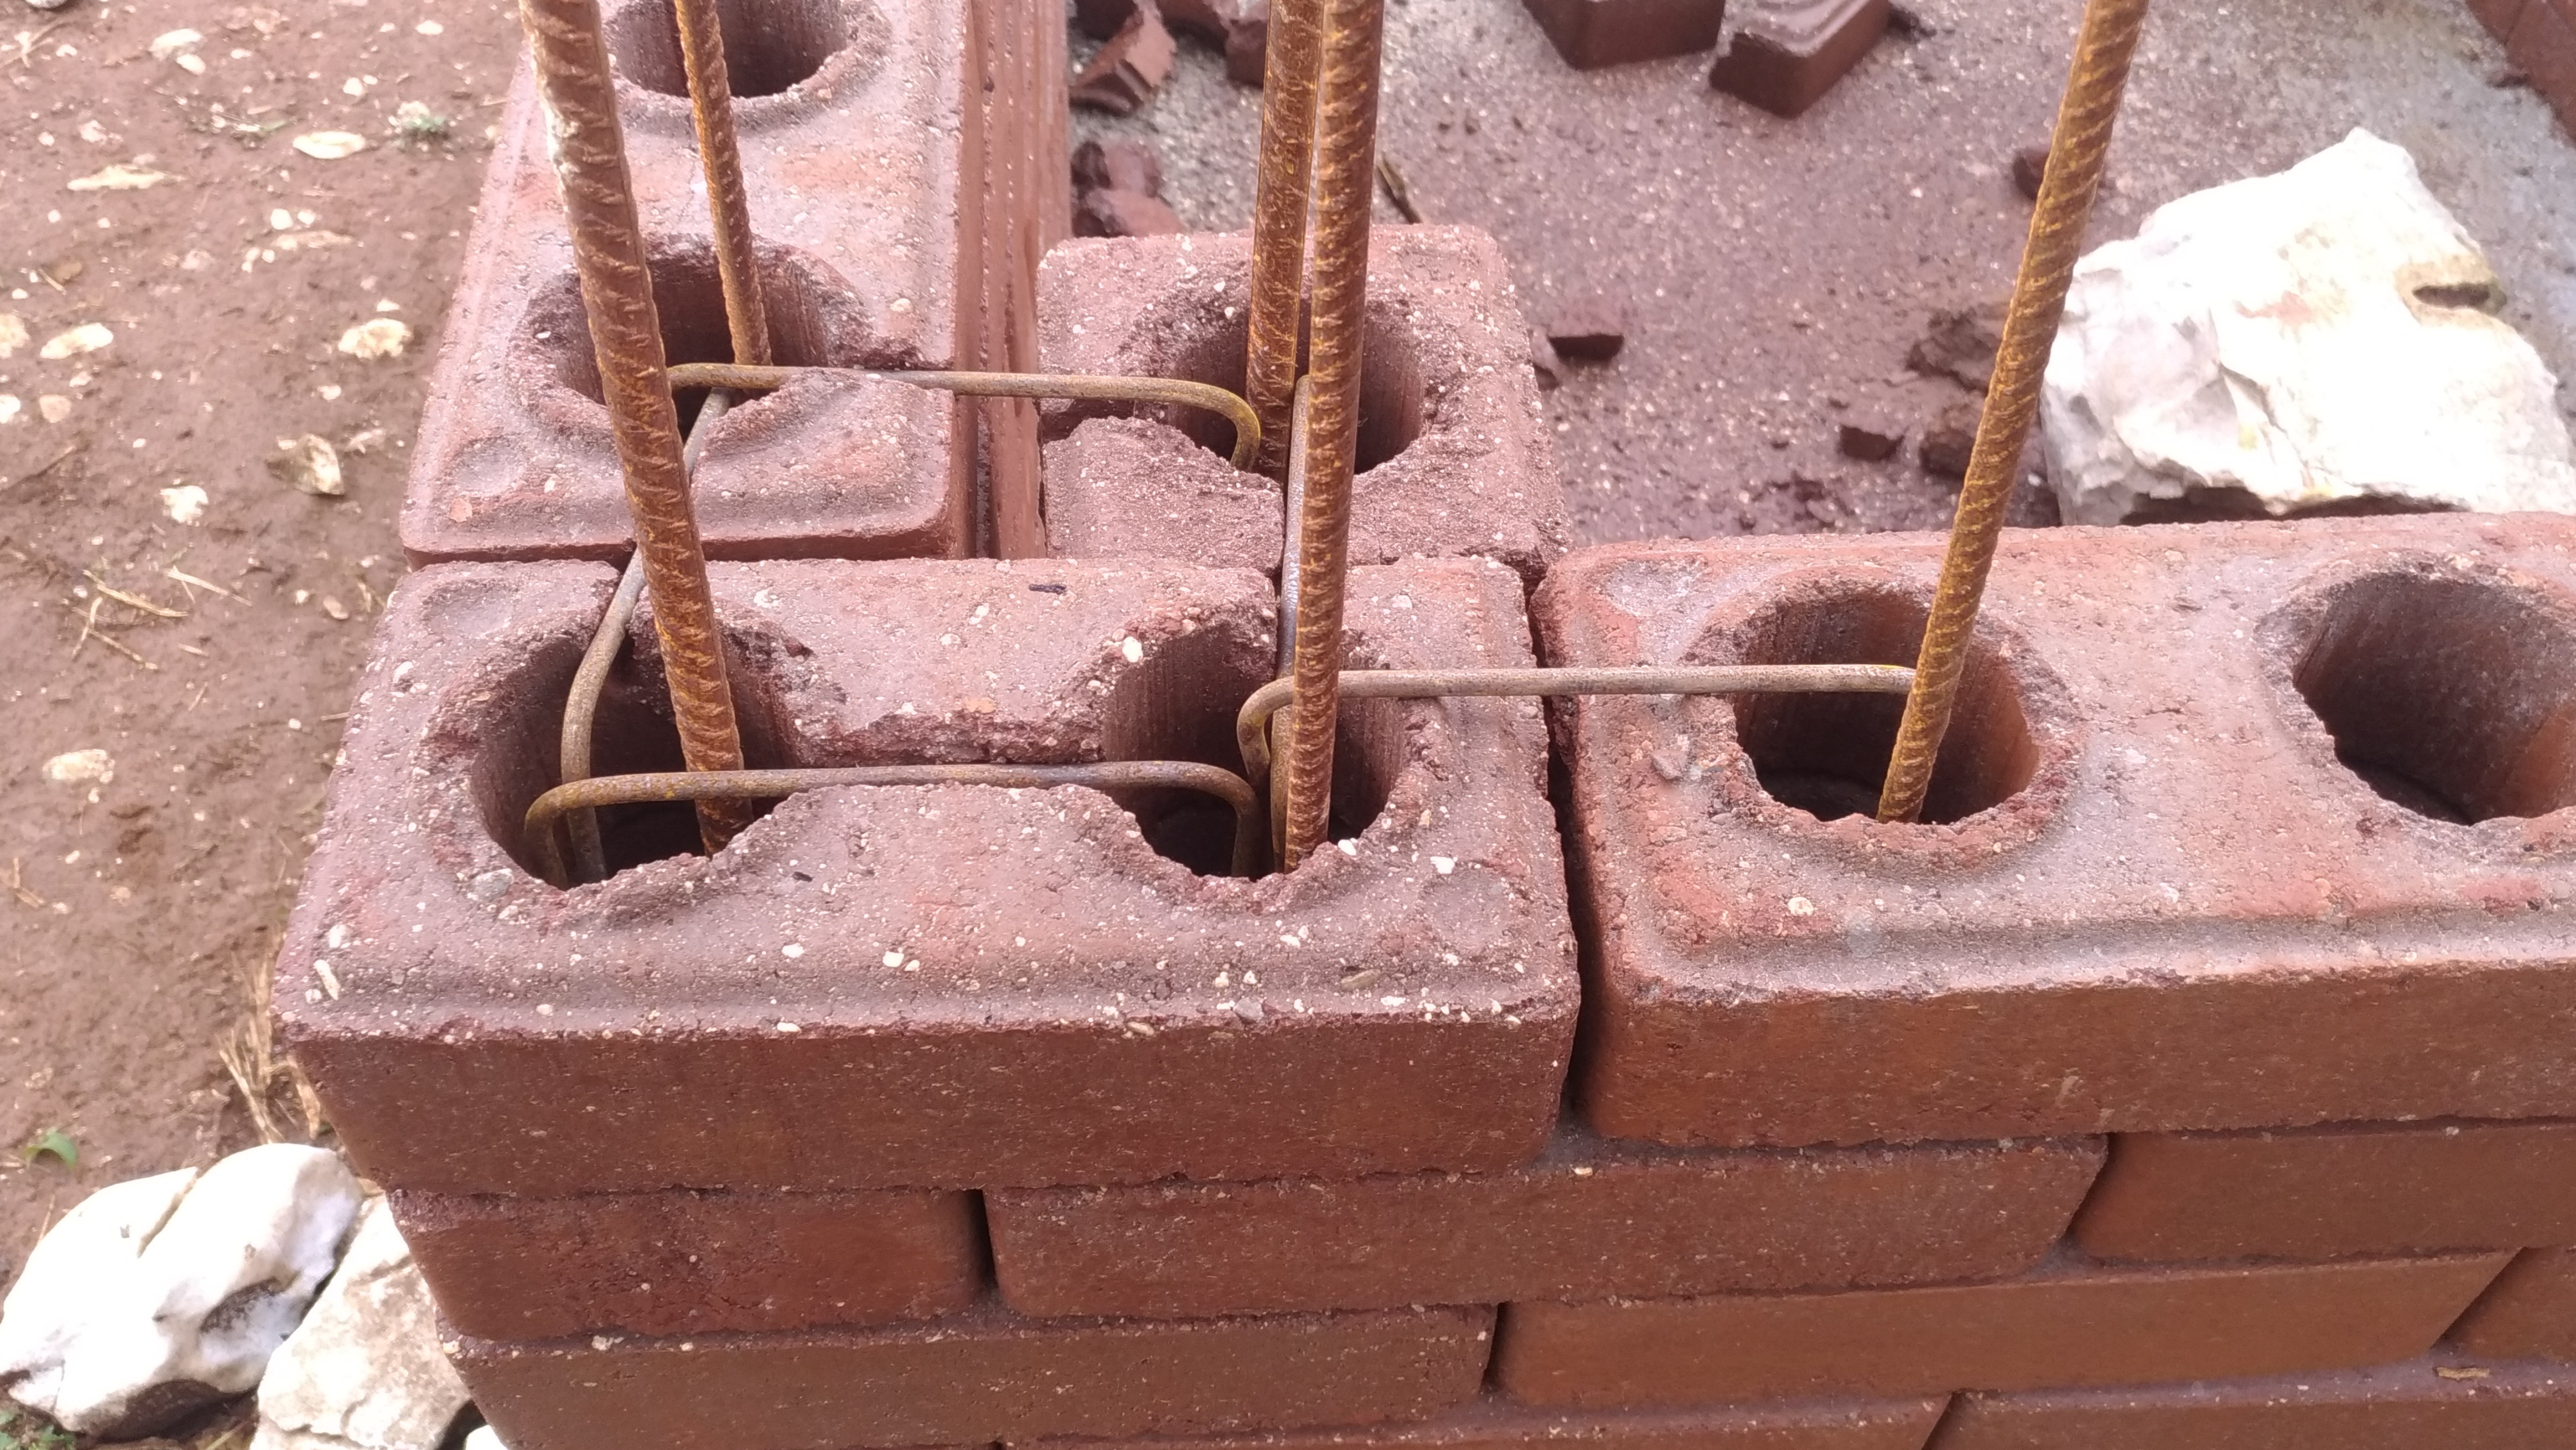 O tijolo solo-cimento funciona como blocos de montar — basta encaixar um em cima do outro e, a cada um metro, adicionar um vergalhão para dar sustentação (Foto: Arquivo pessoal)